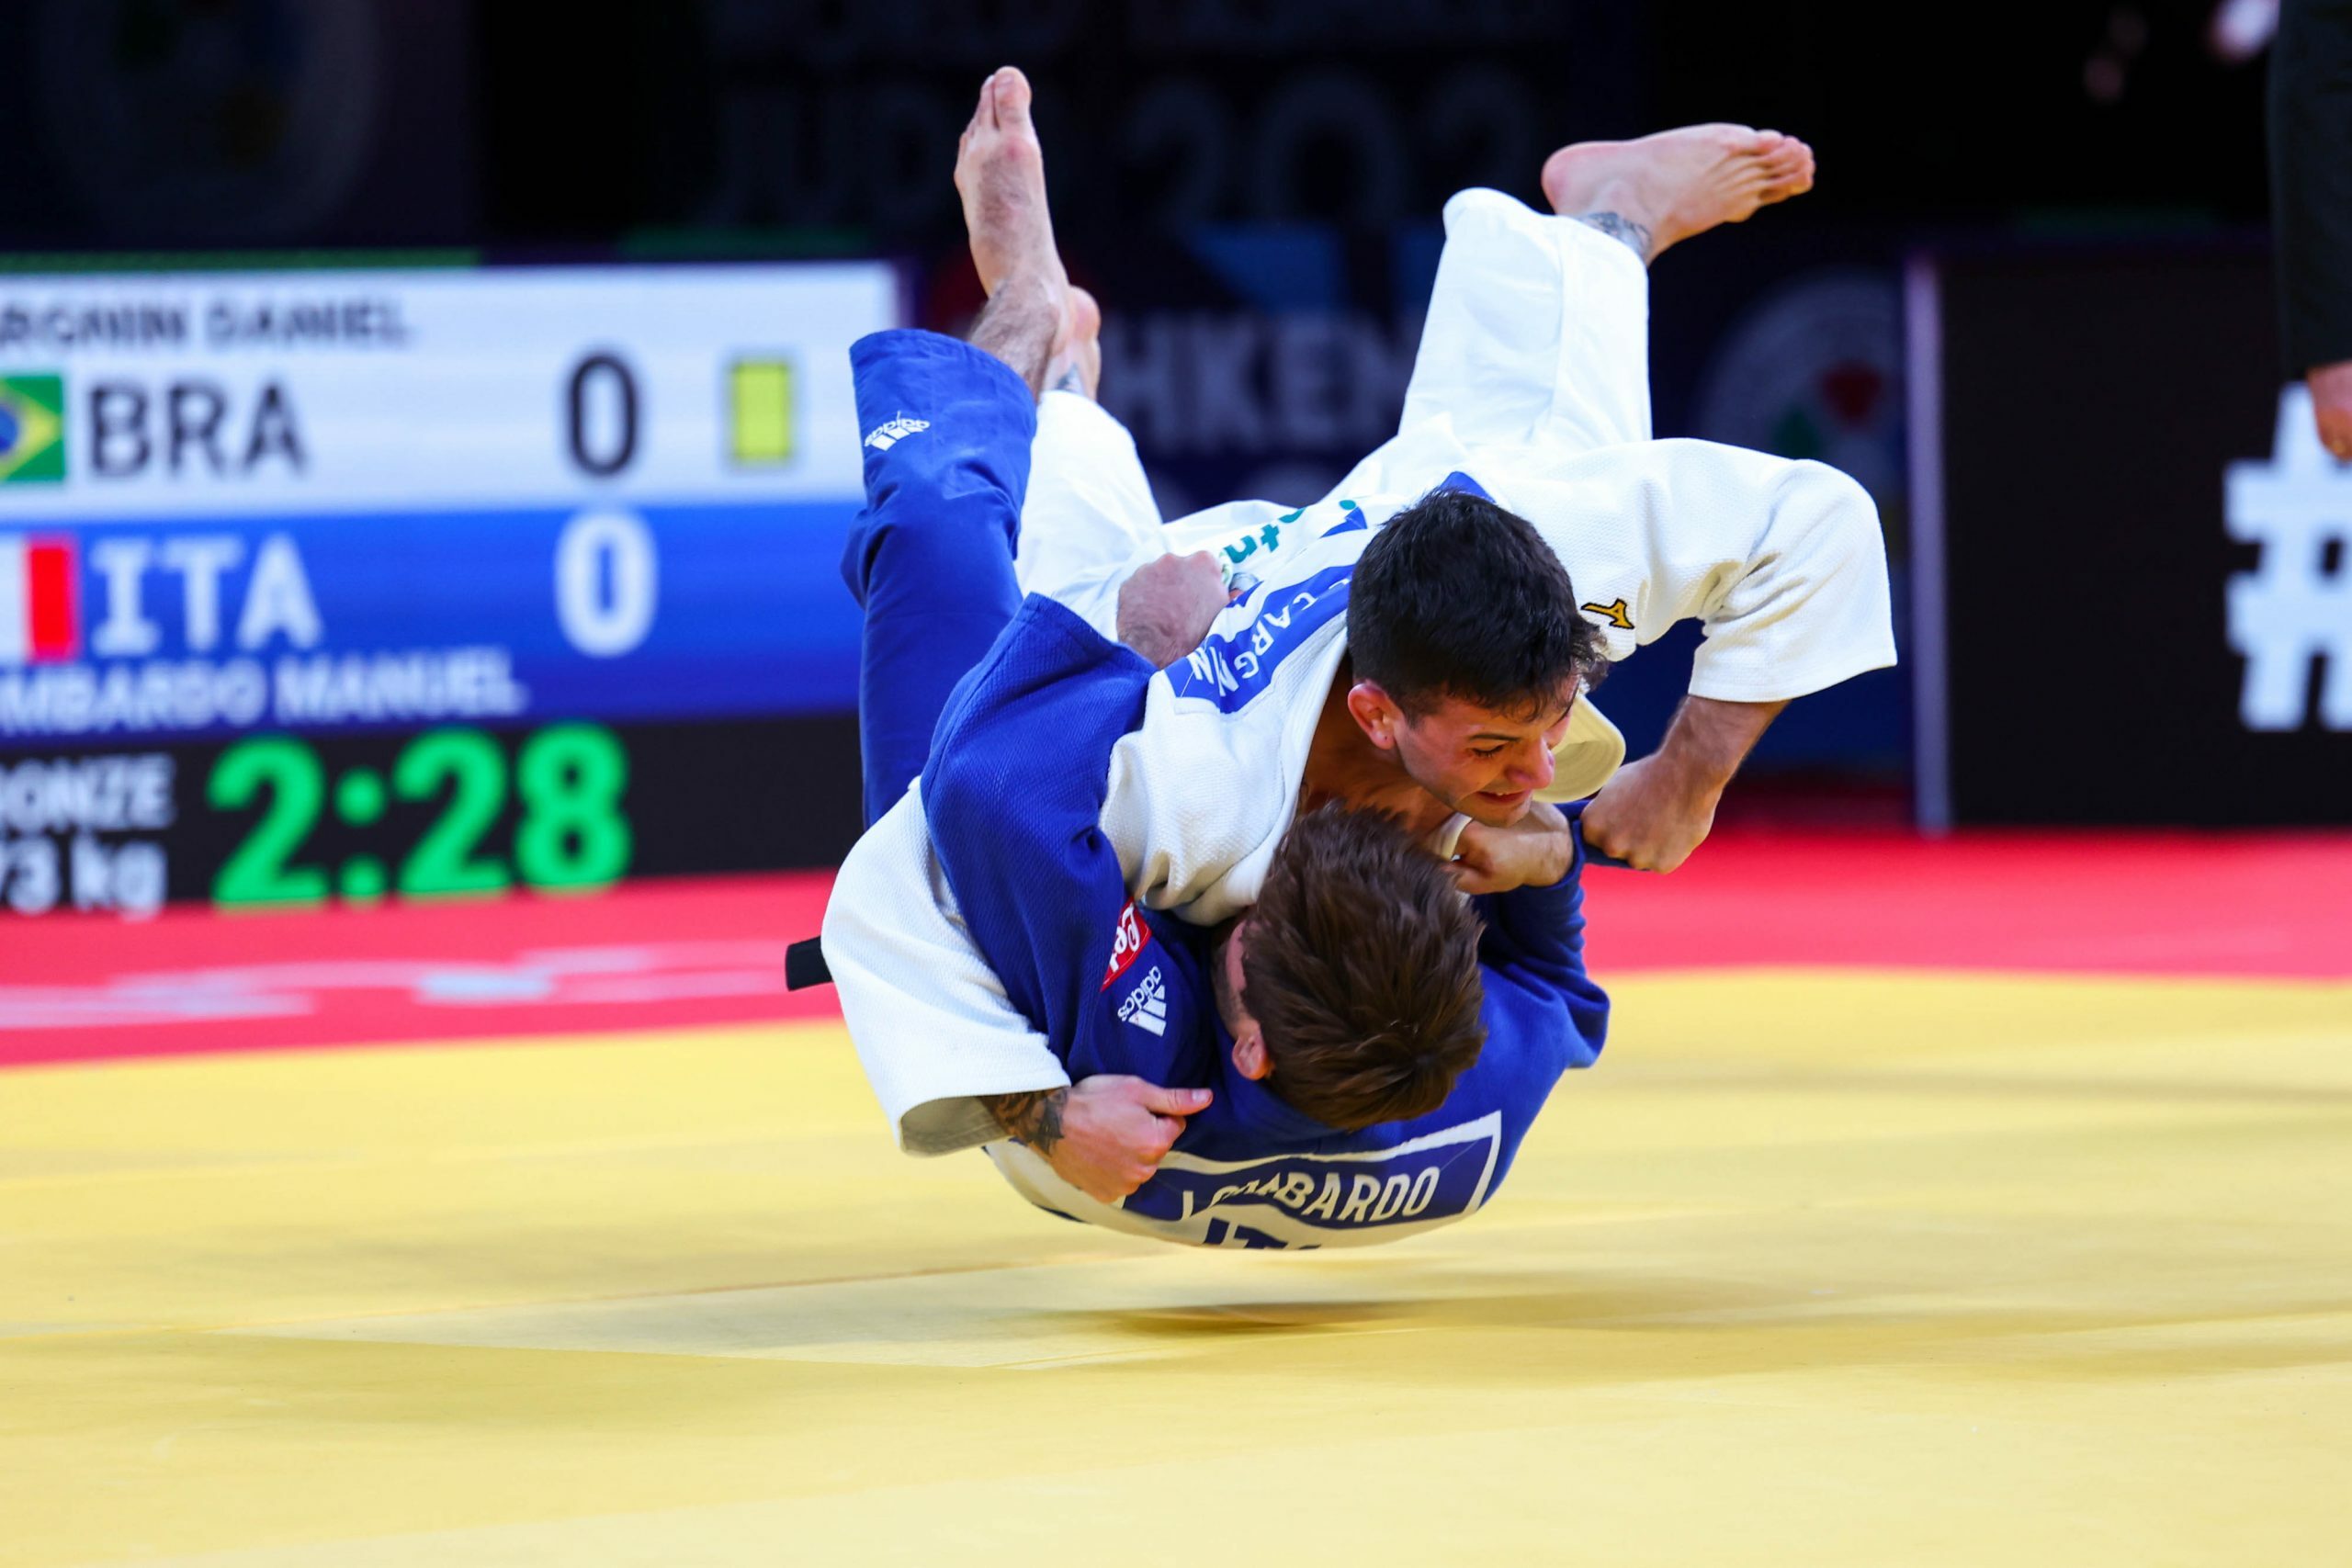 Judoca da Sogipa e Seleção Brasileira leva bronze em Israel e fica mais  perto de Tóquio